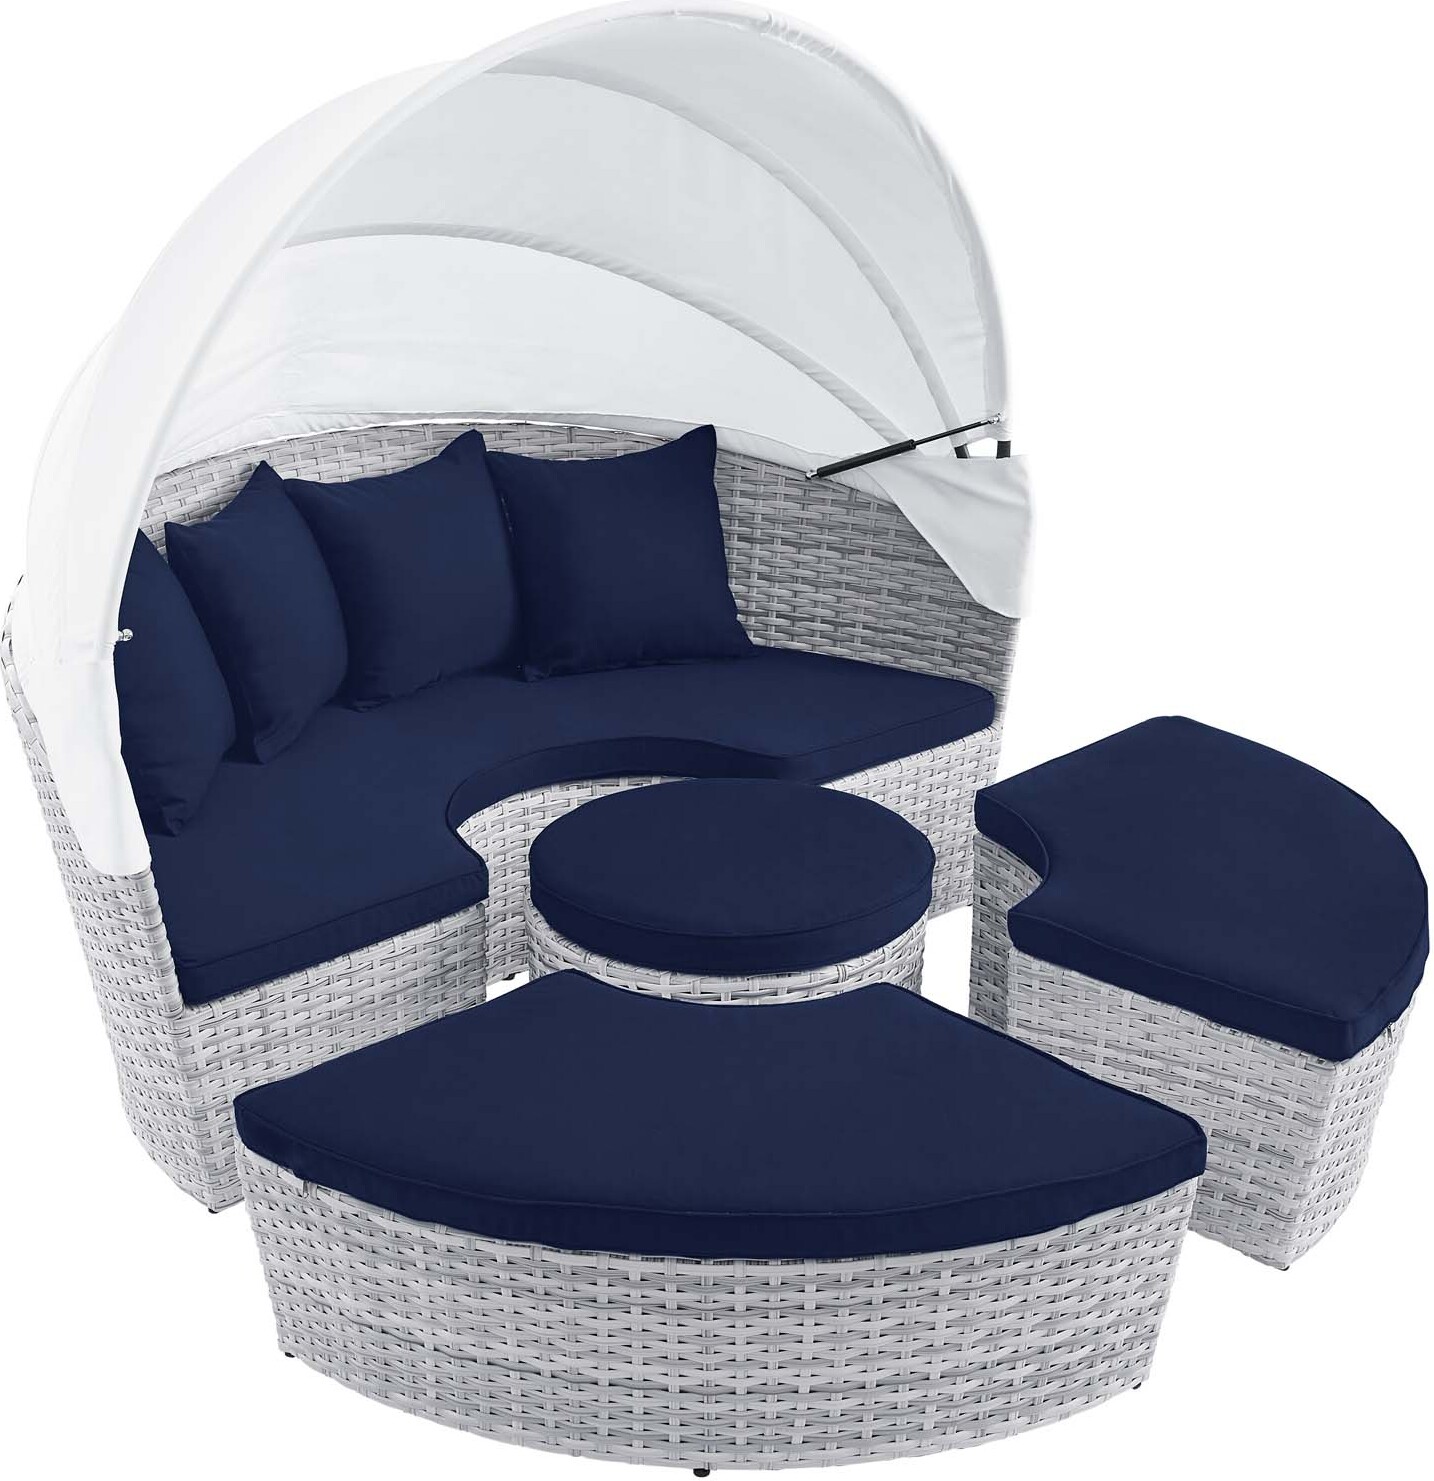 L33T Luxury Gaming Chair Cushion set, Memory Foam, Velvet, Black